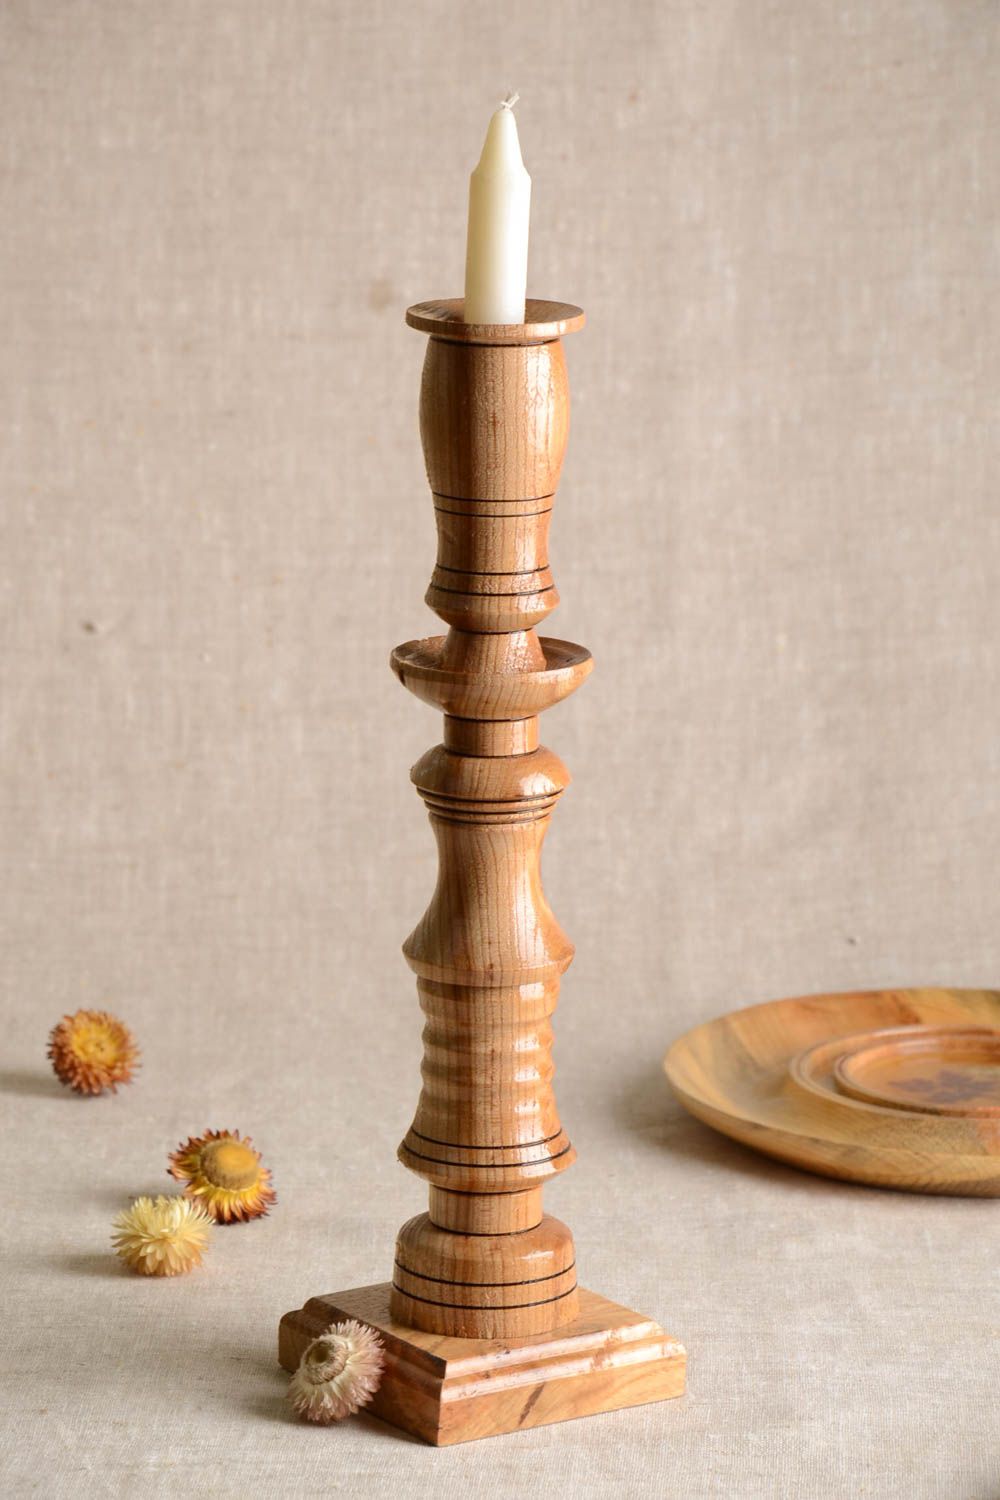 Handmade candlestick wooden candlestick designer candlestick interior decor photo 1